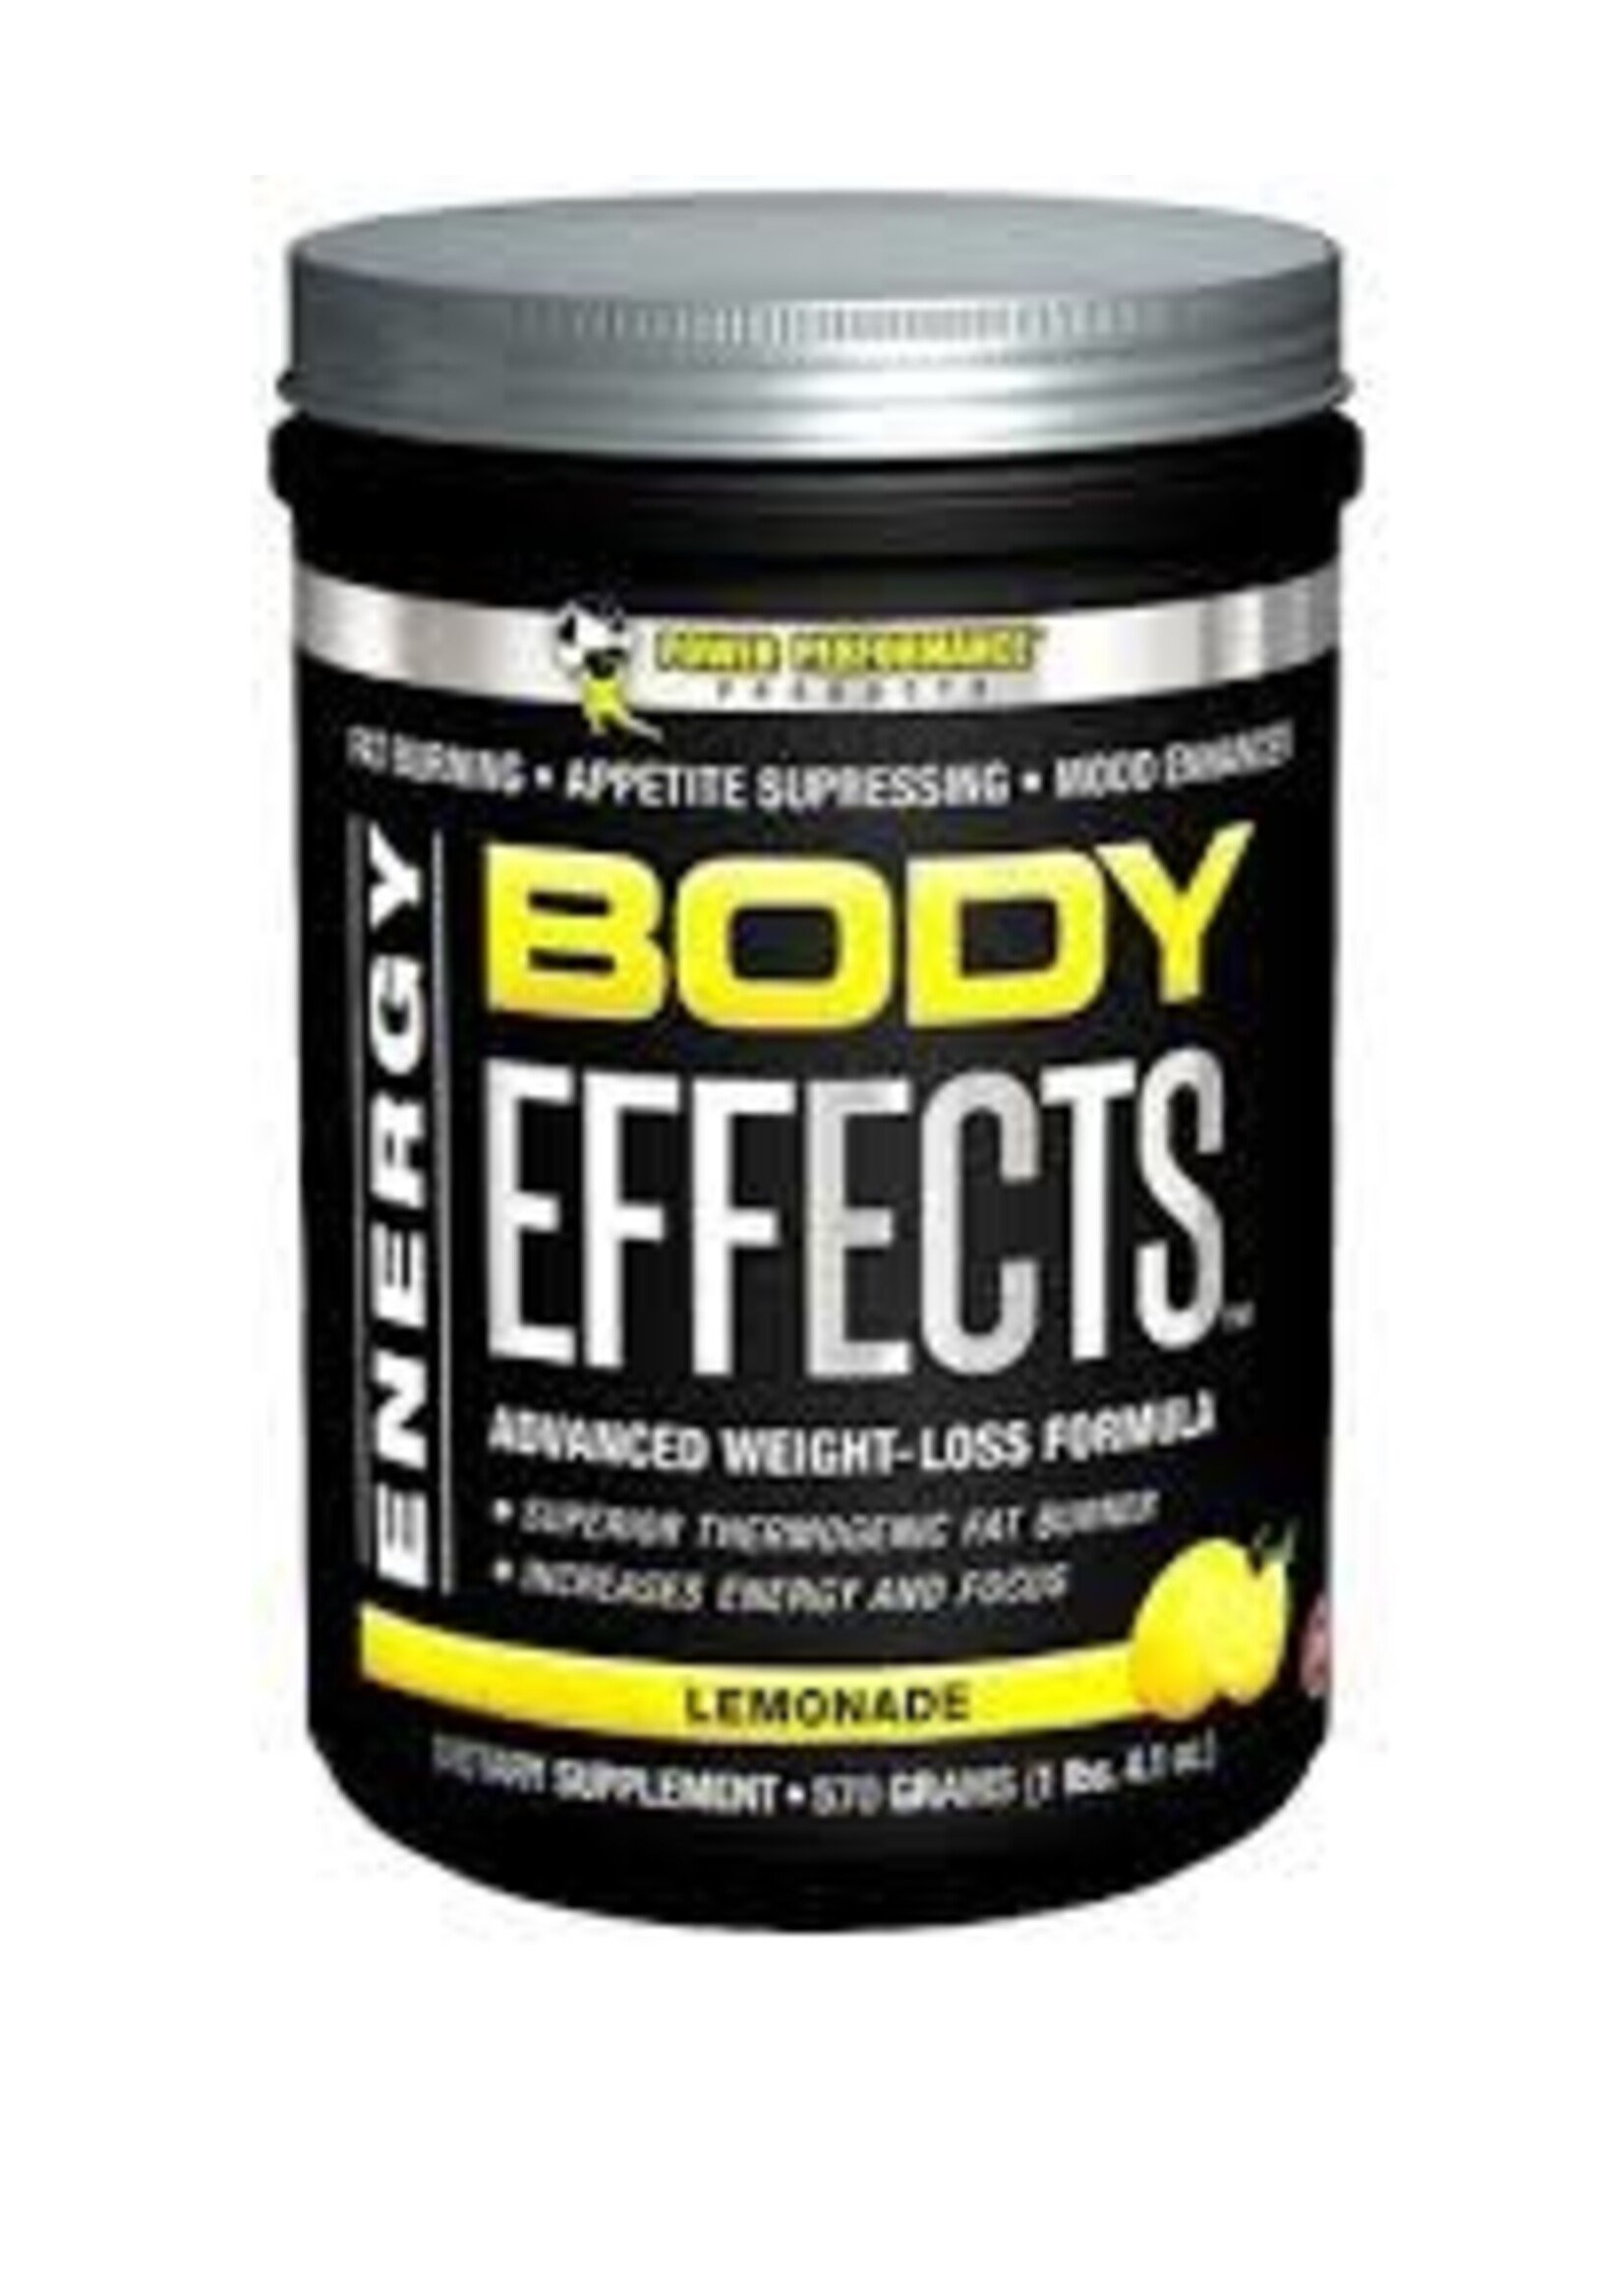 Body Effects Body Effects